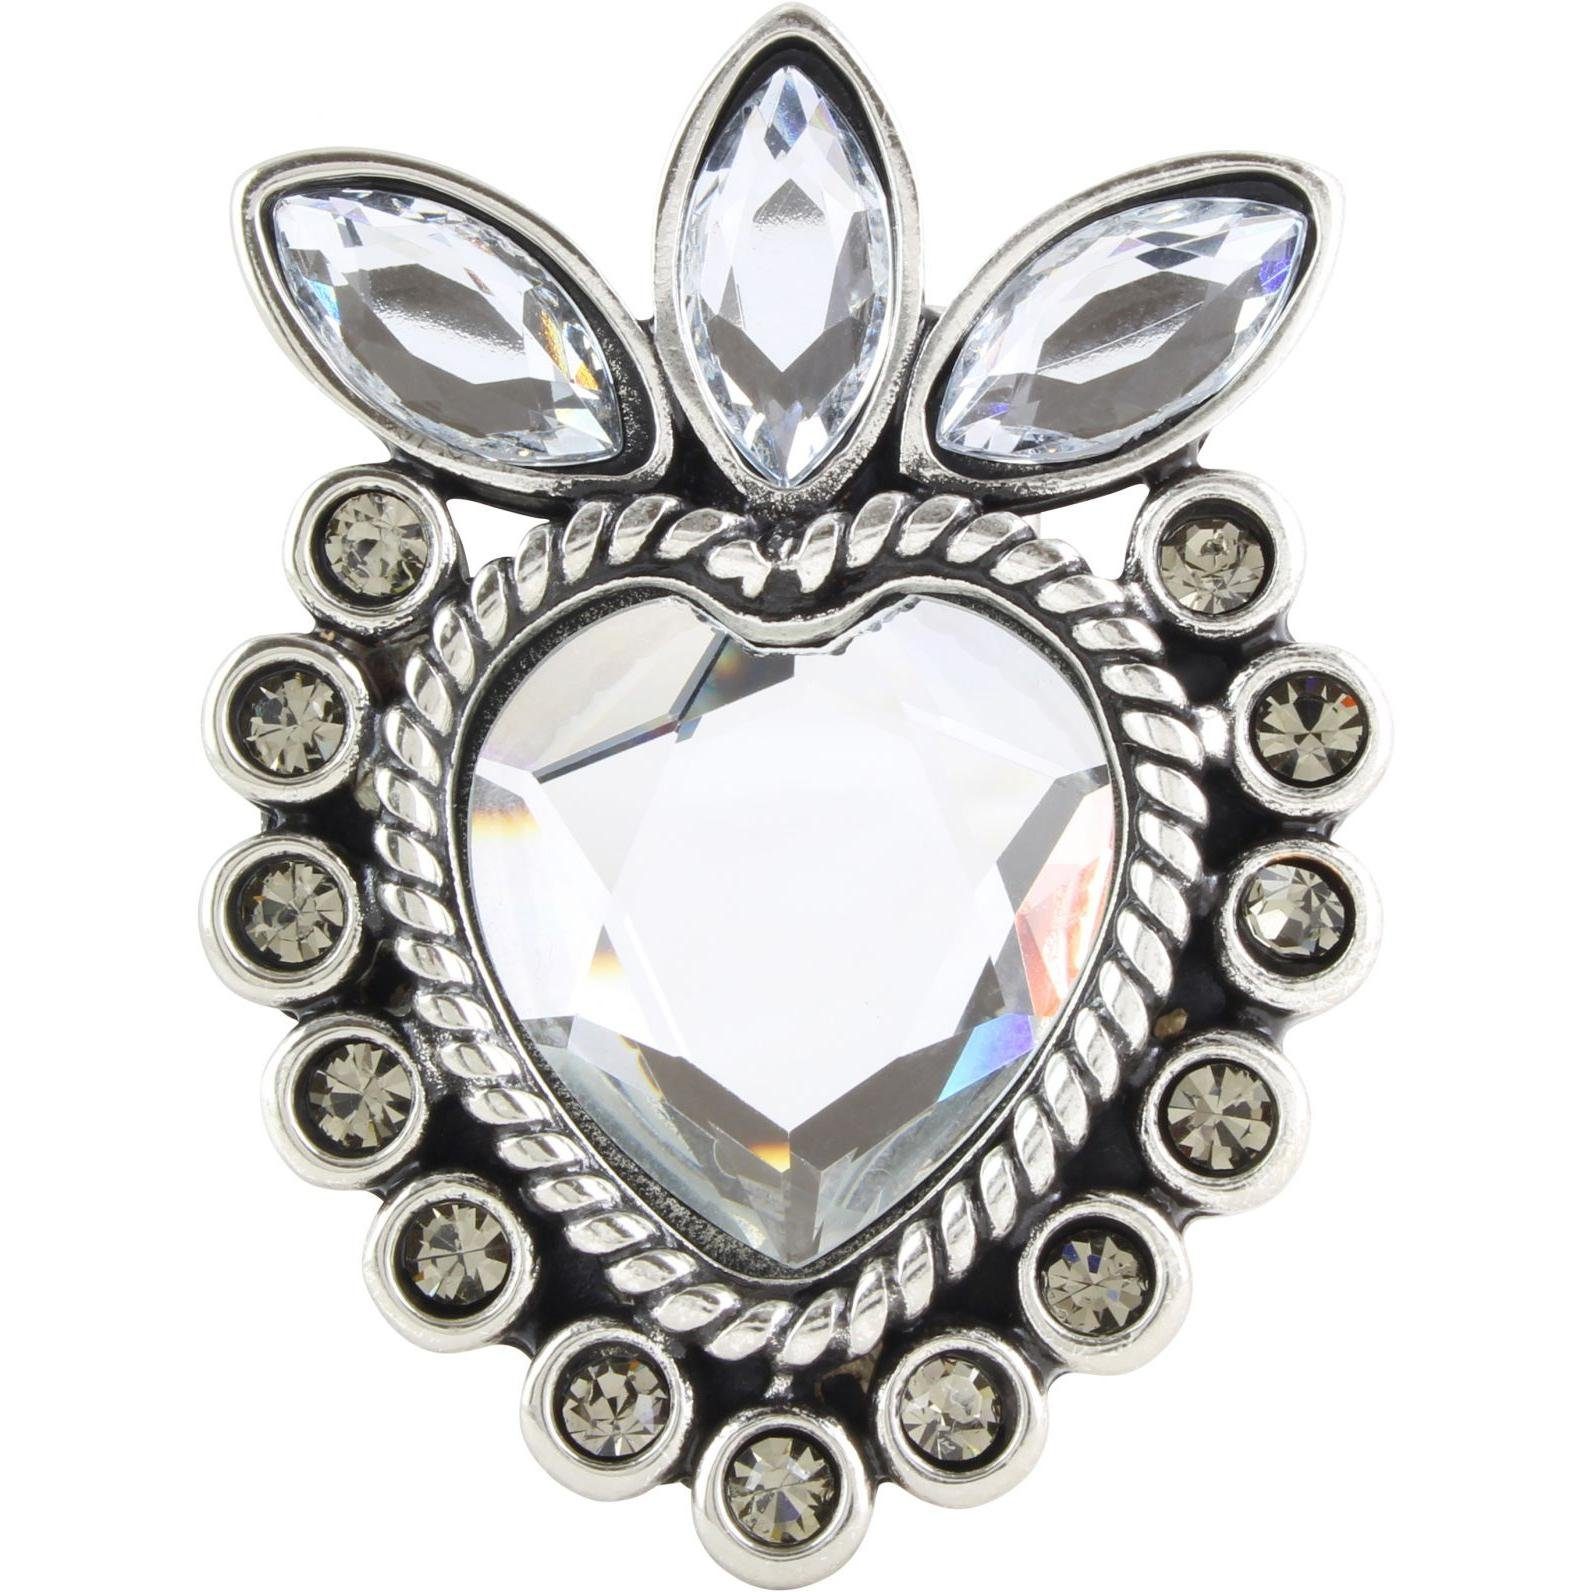 BELTINGER Gürtelschnalle Cristal Heart 4,0 cm - Buckle Gürtelschließe 40mm - Mit hochwertigem S Silber, mit Kristall-Strass